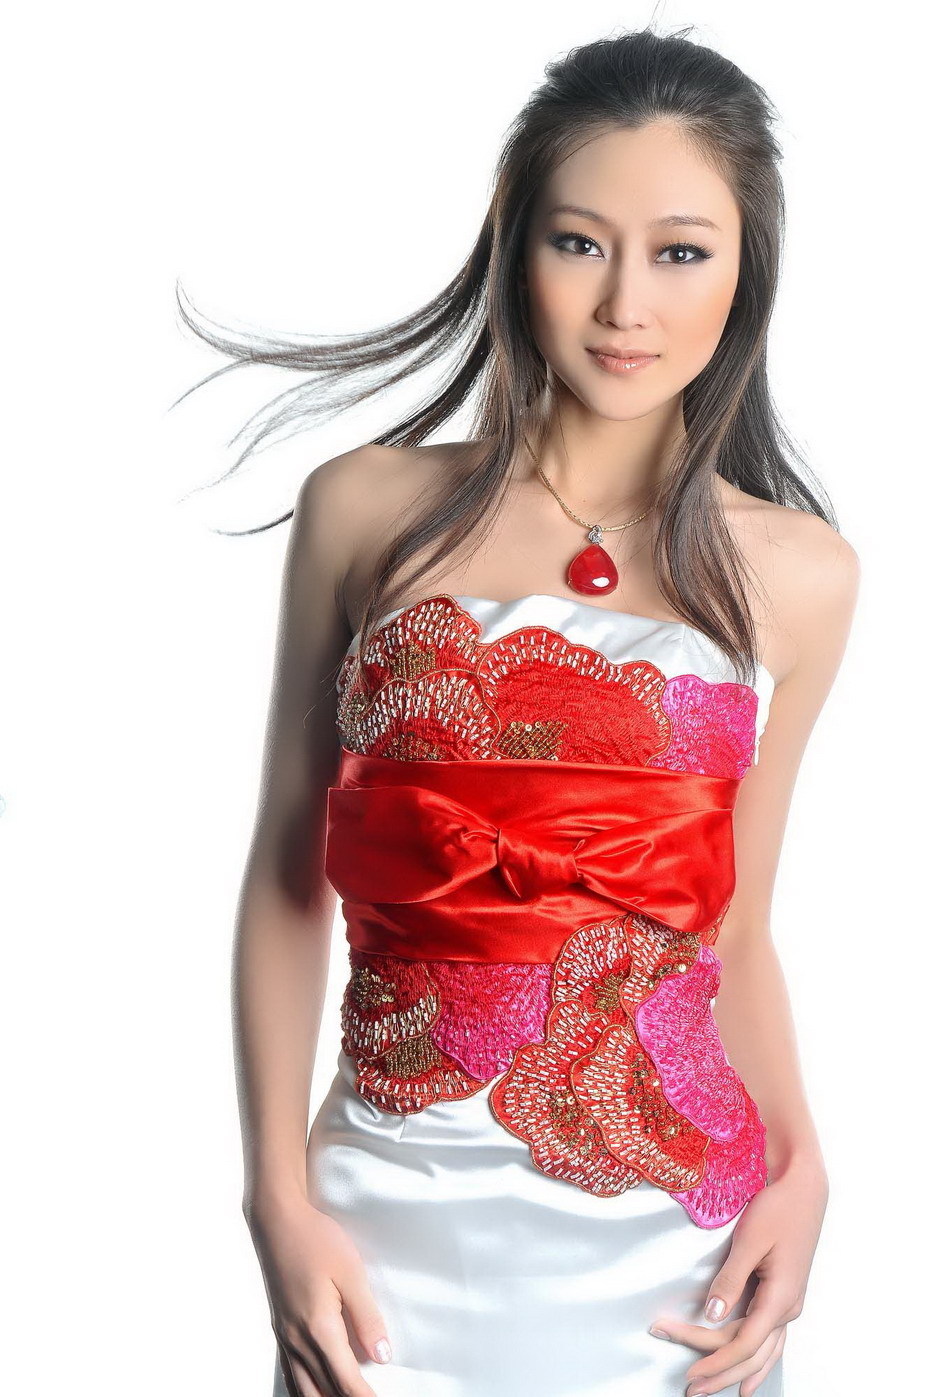 Lin peng actress